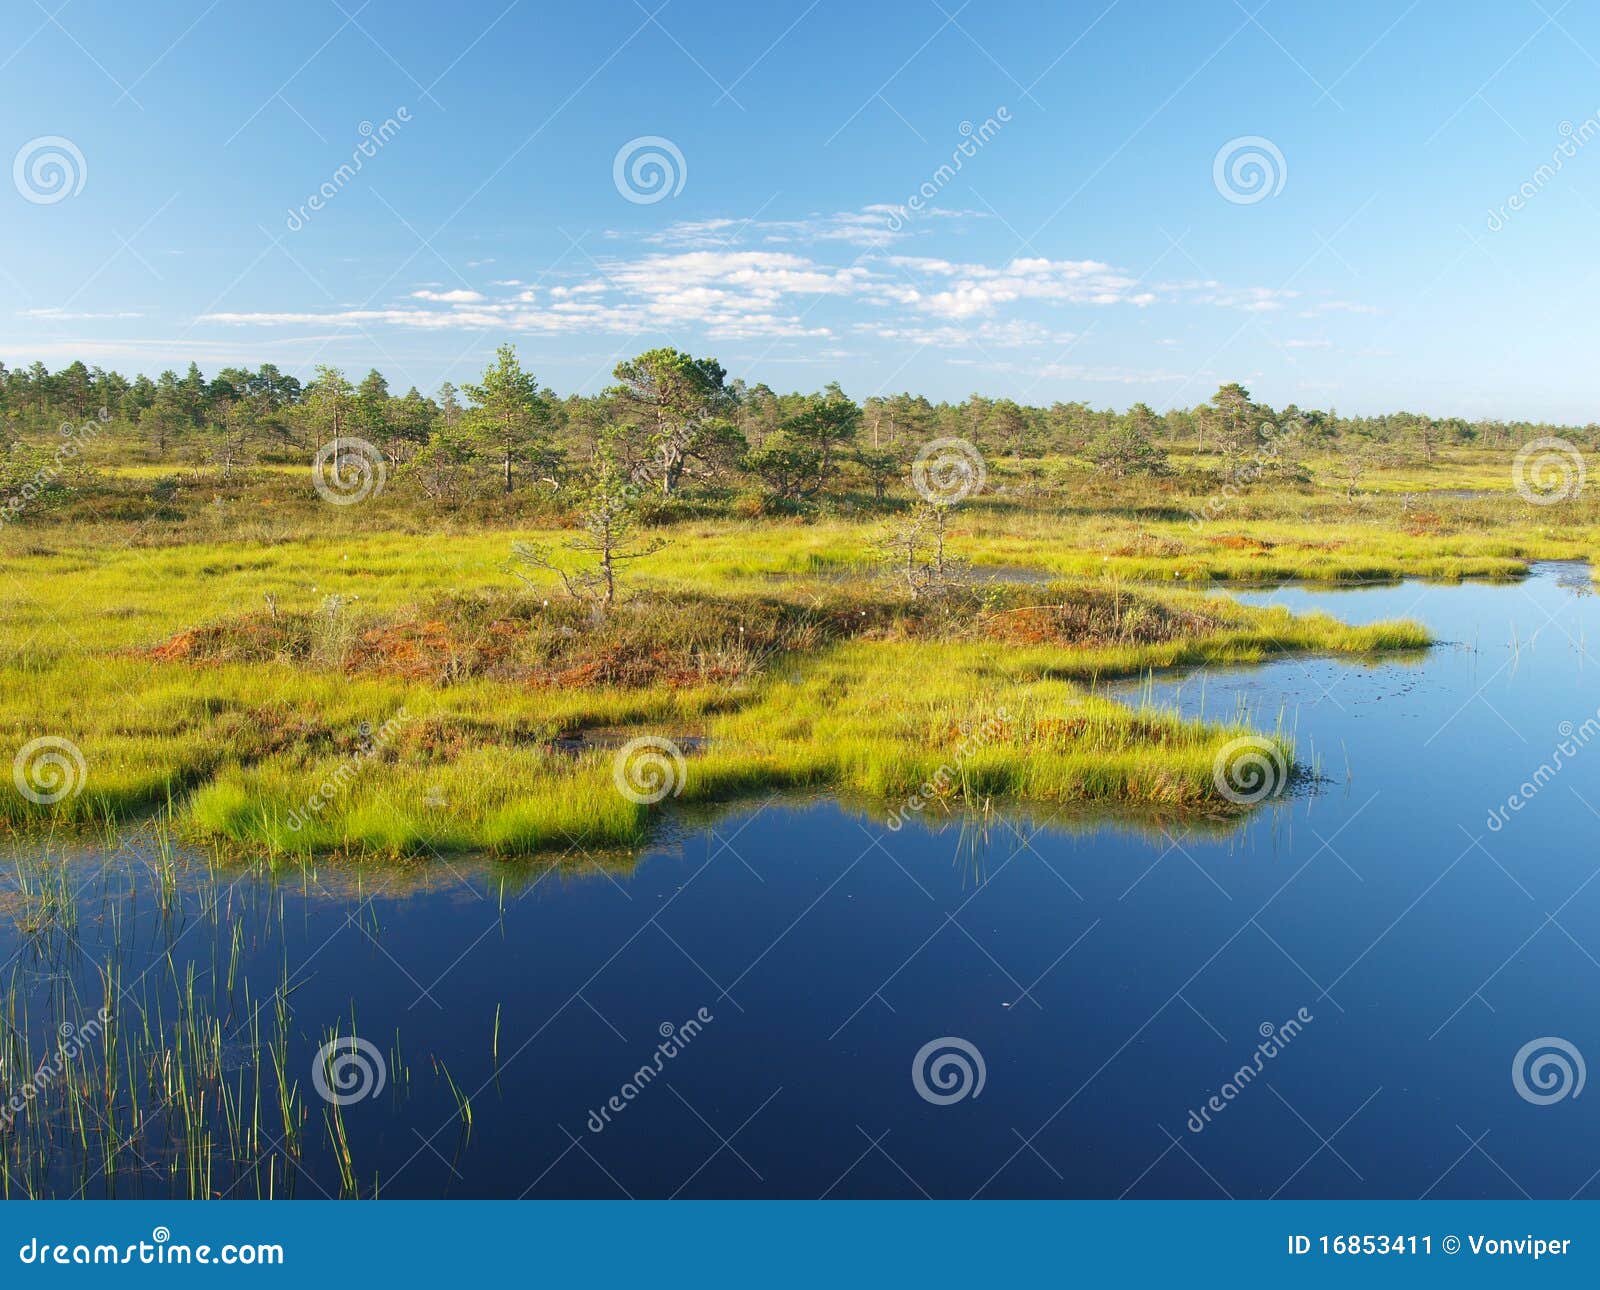 bog landscape